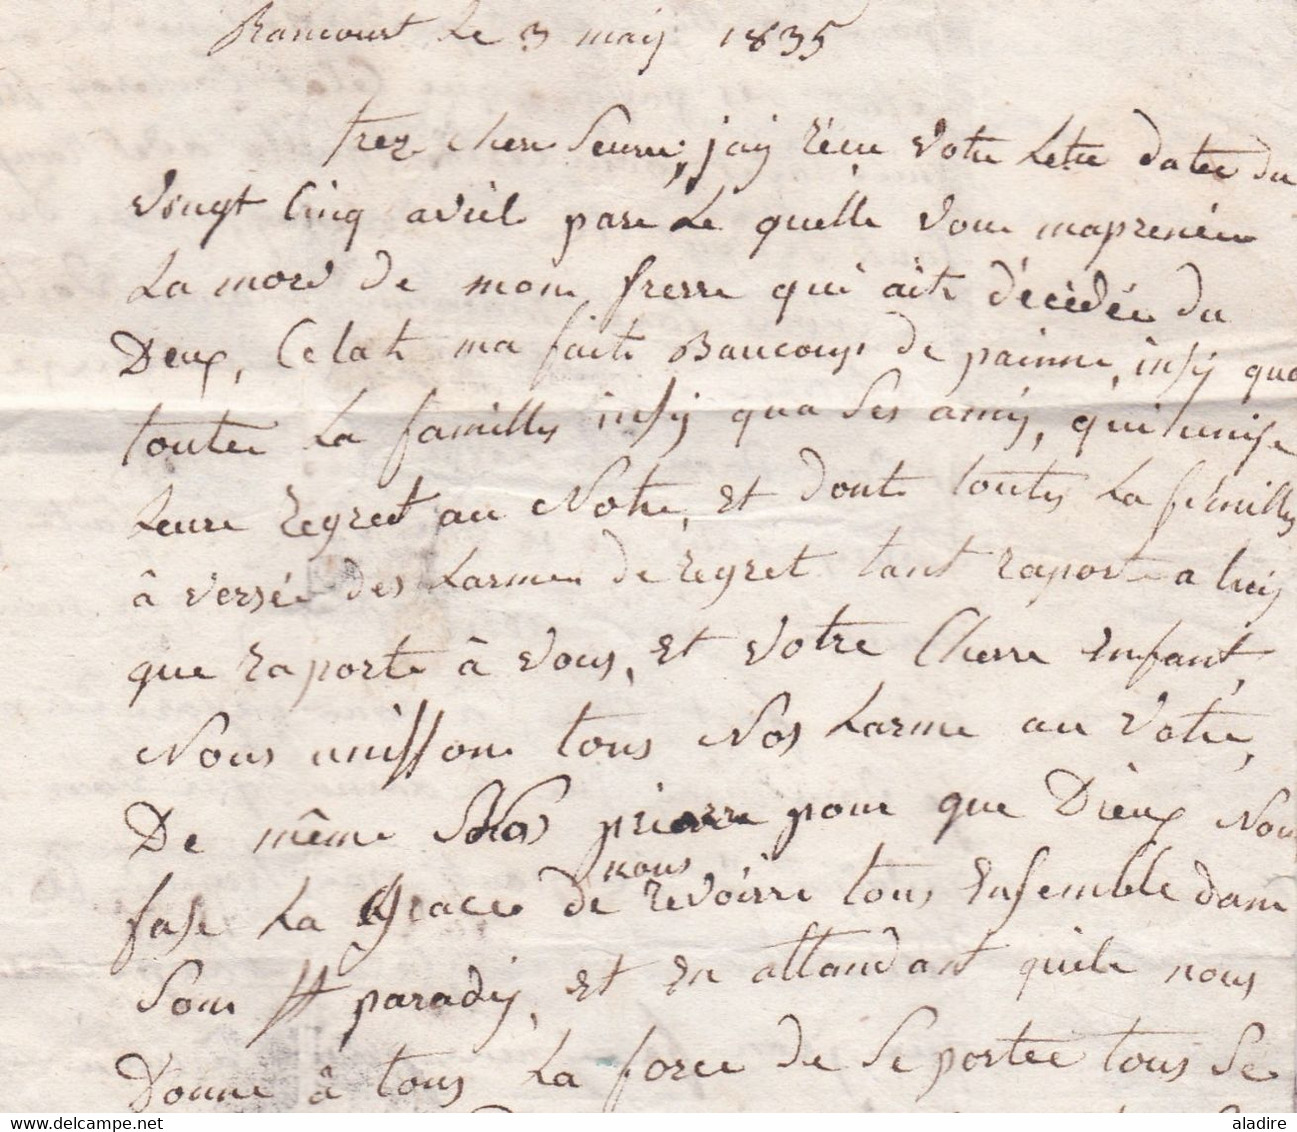 1835 - Cursive 53 REVIGNY, MEUSE sur lettre pliée avec corresp familiale 3 pages vers Versailles - taxe 6 - Banlieue